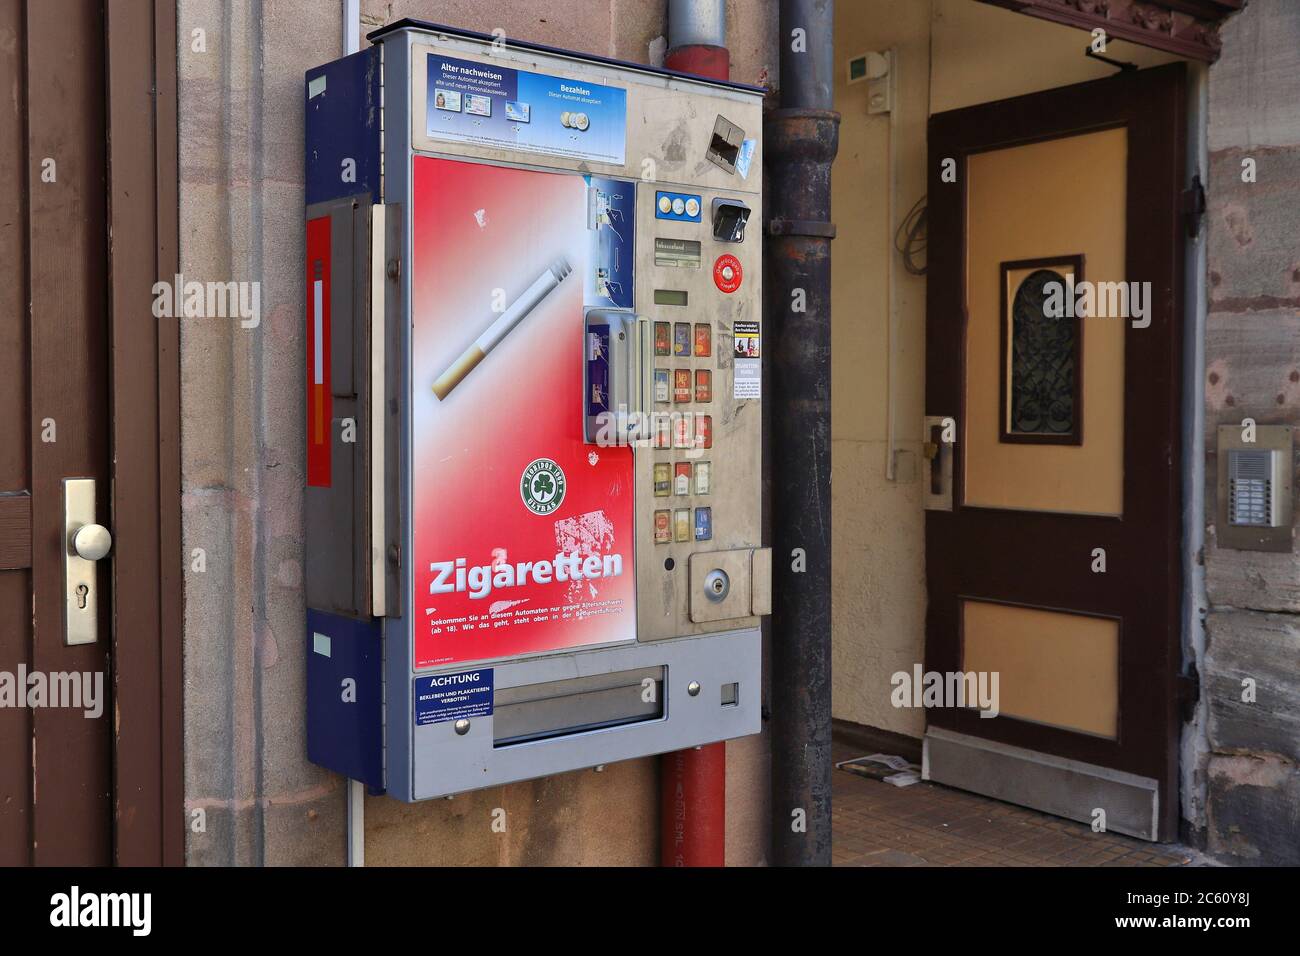 ERLANGEN, Deutschland - Mai 6, 2018: Zigarettenautomaten in Erlangen. Die Maschinen sind weit verbreitet in Deutschland. Sie führen Alter Kontrollen durch sc Stockfoto